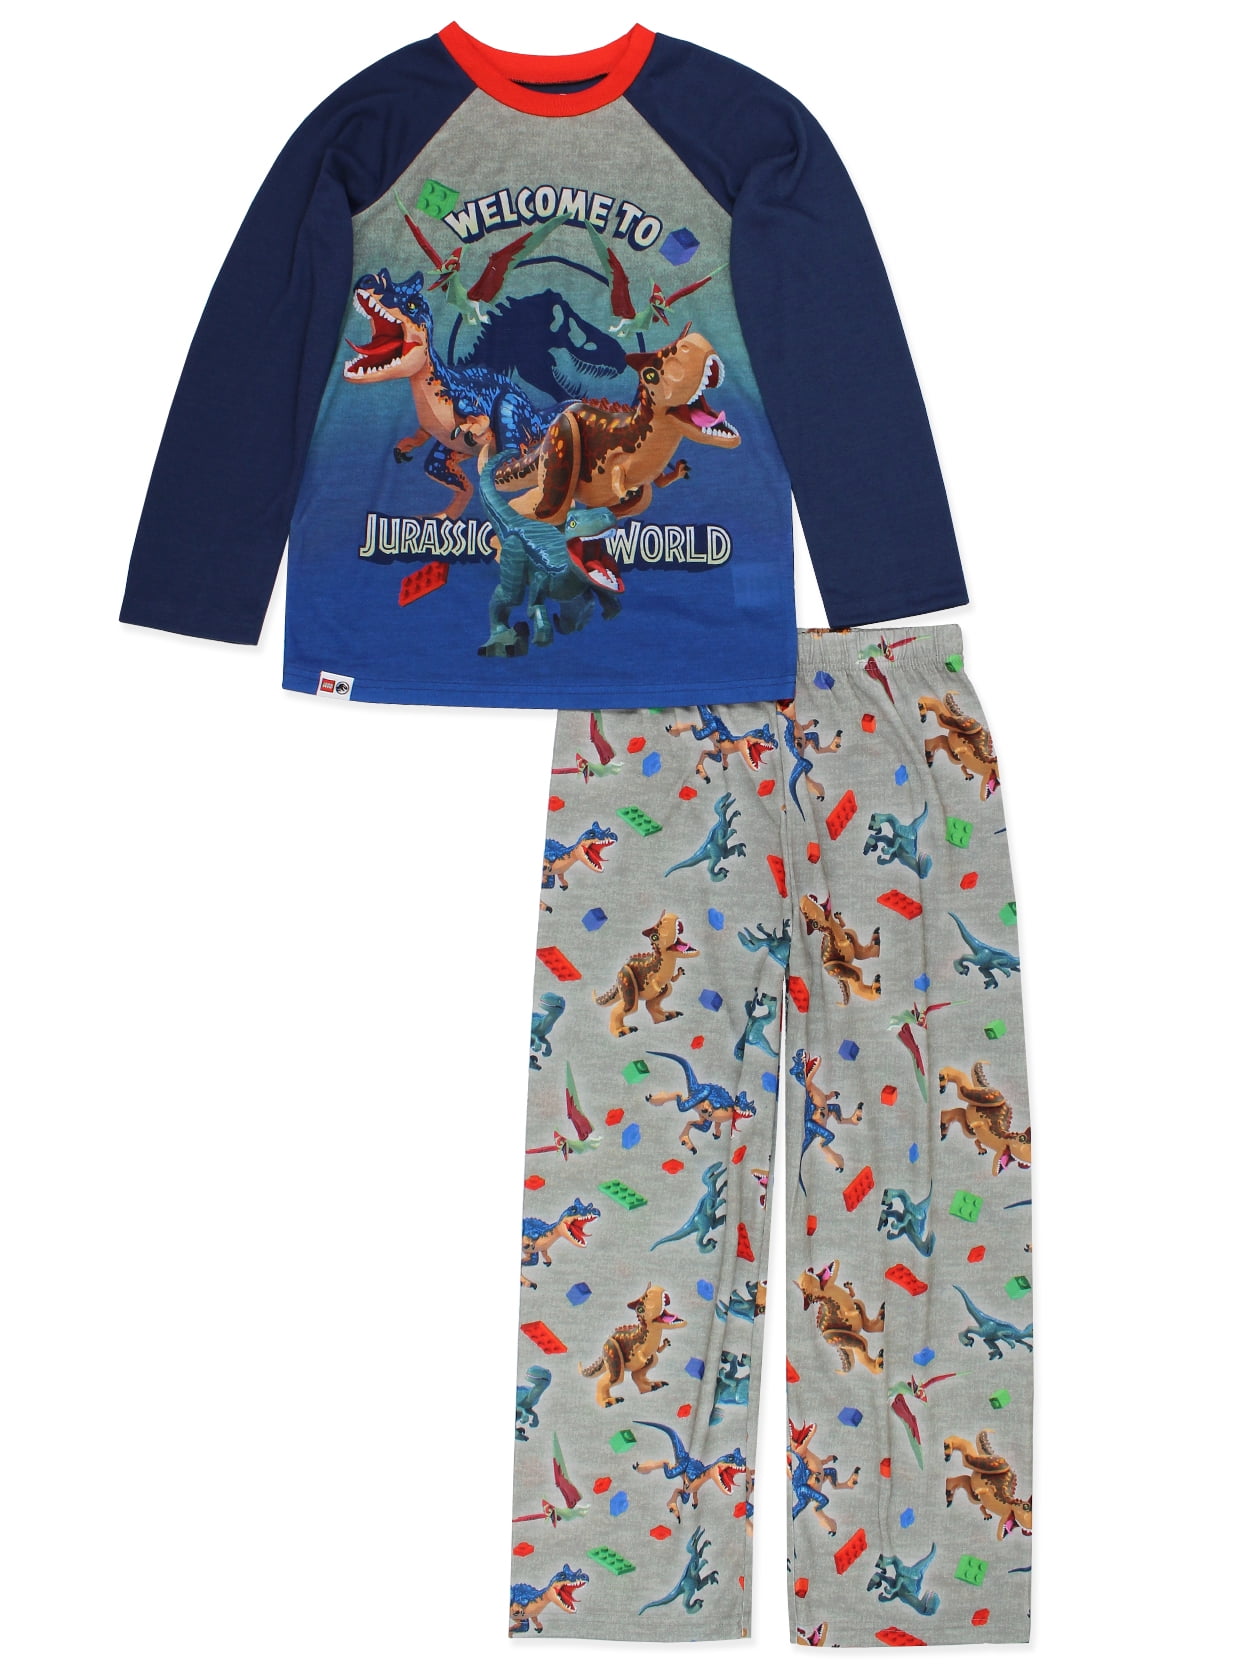 Boys Jurassic World Pyjamas Dinosaur  Age 4 5 6 7 8 9 10 Years 